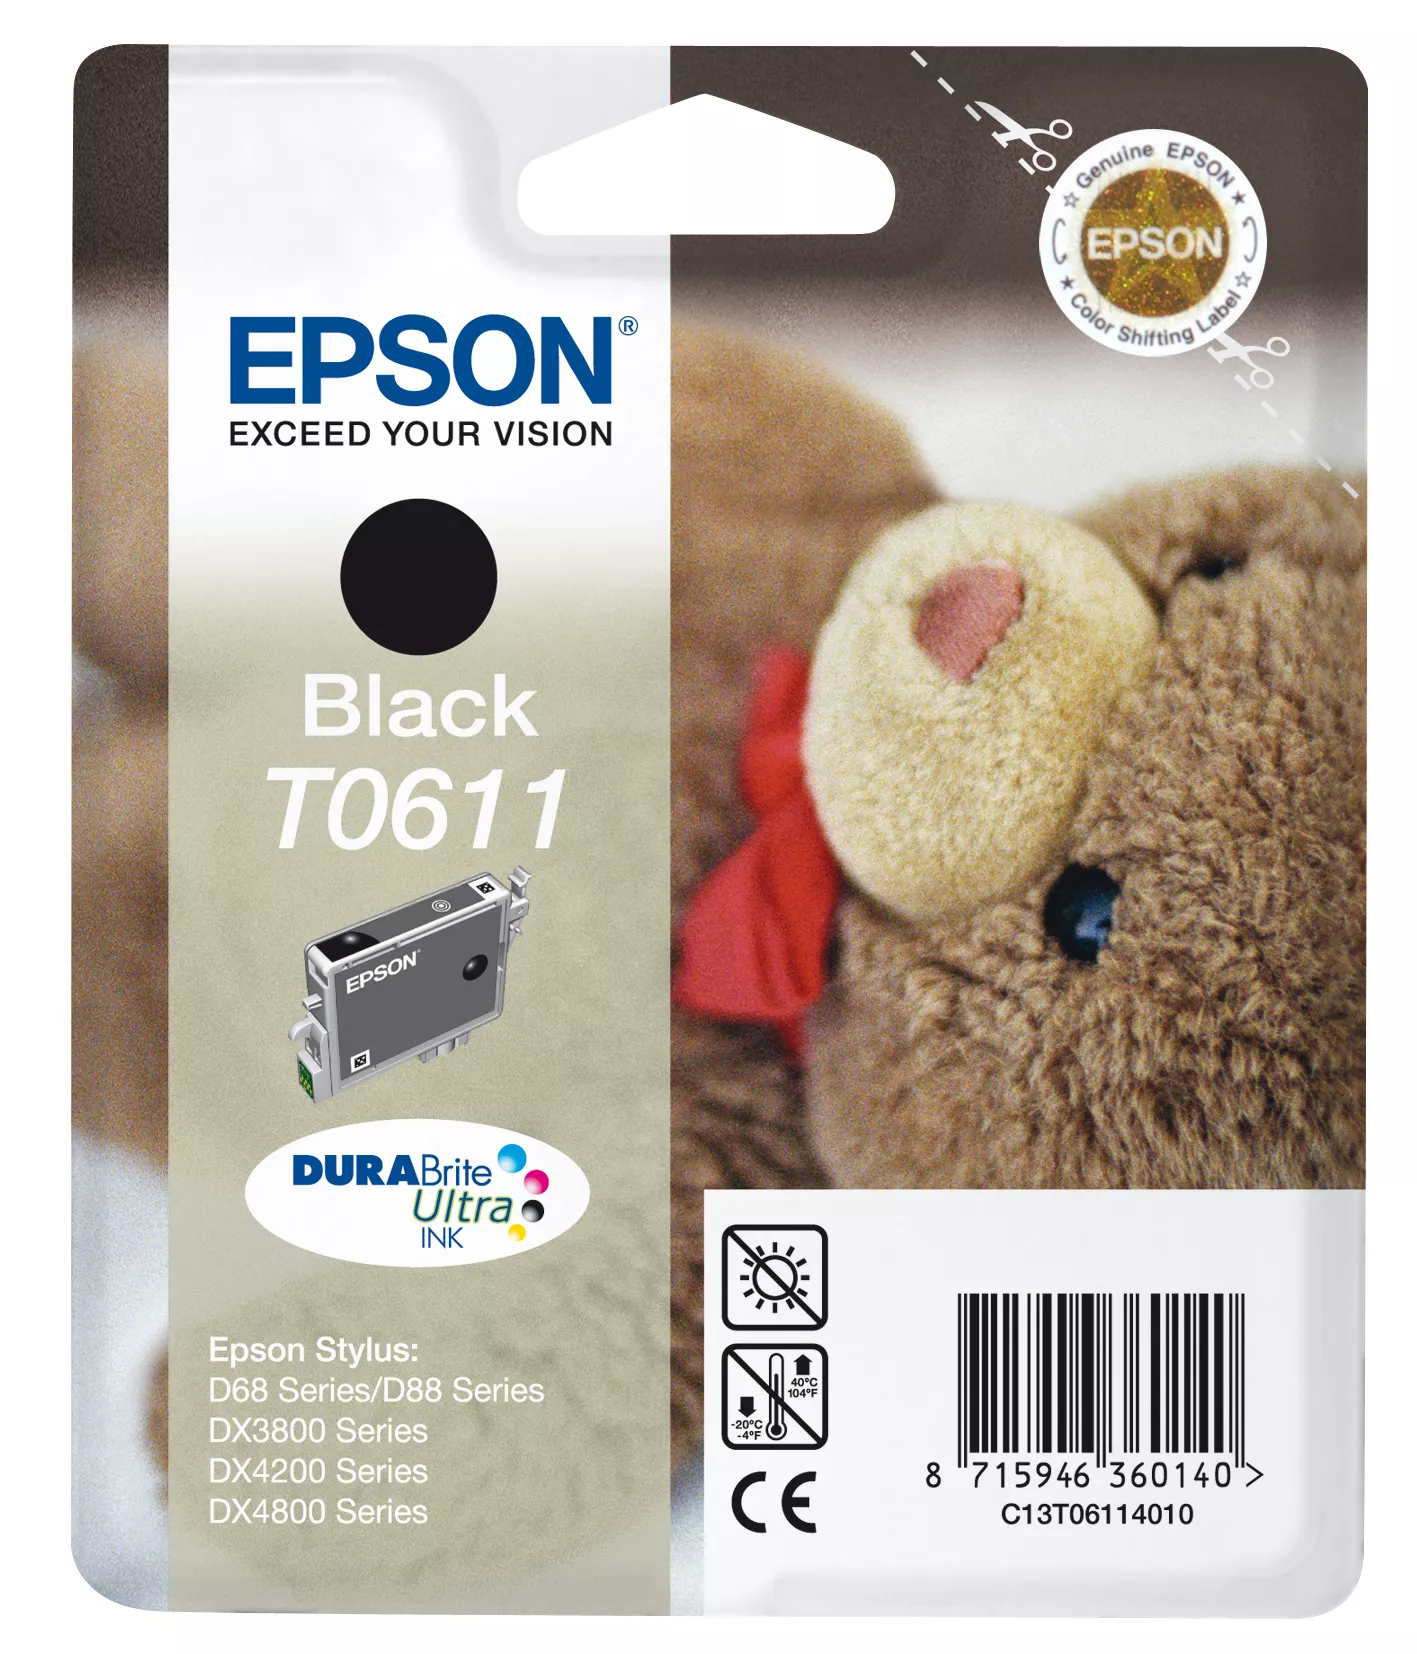 Vente EPSON T0611 cartouche d encre noir capacité standard Epson au meilleur prix - visuel 2